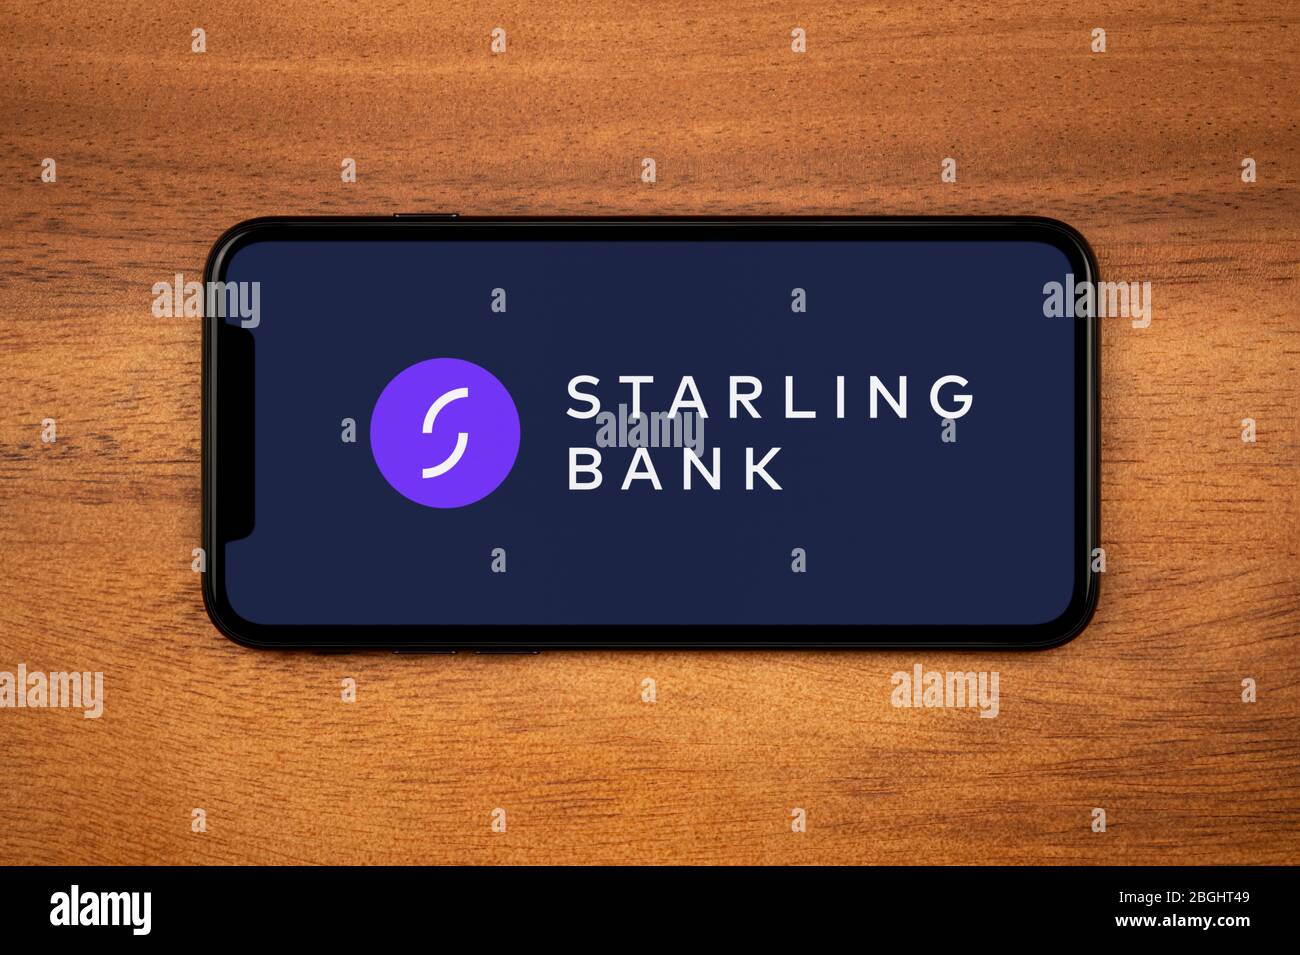 Un smartphone affichant le logo Starling Bank repose sur une table en bois ordinaire (usage éditorial uniquement). Banque D'Images